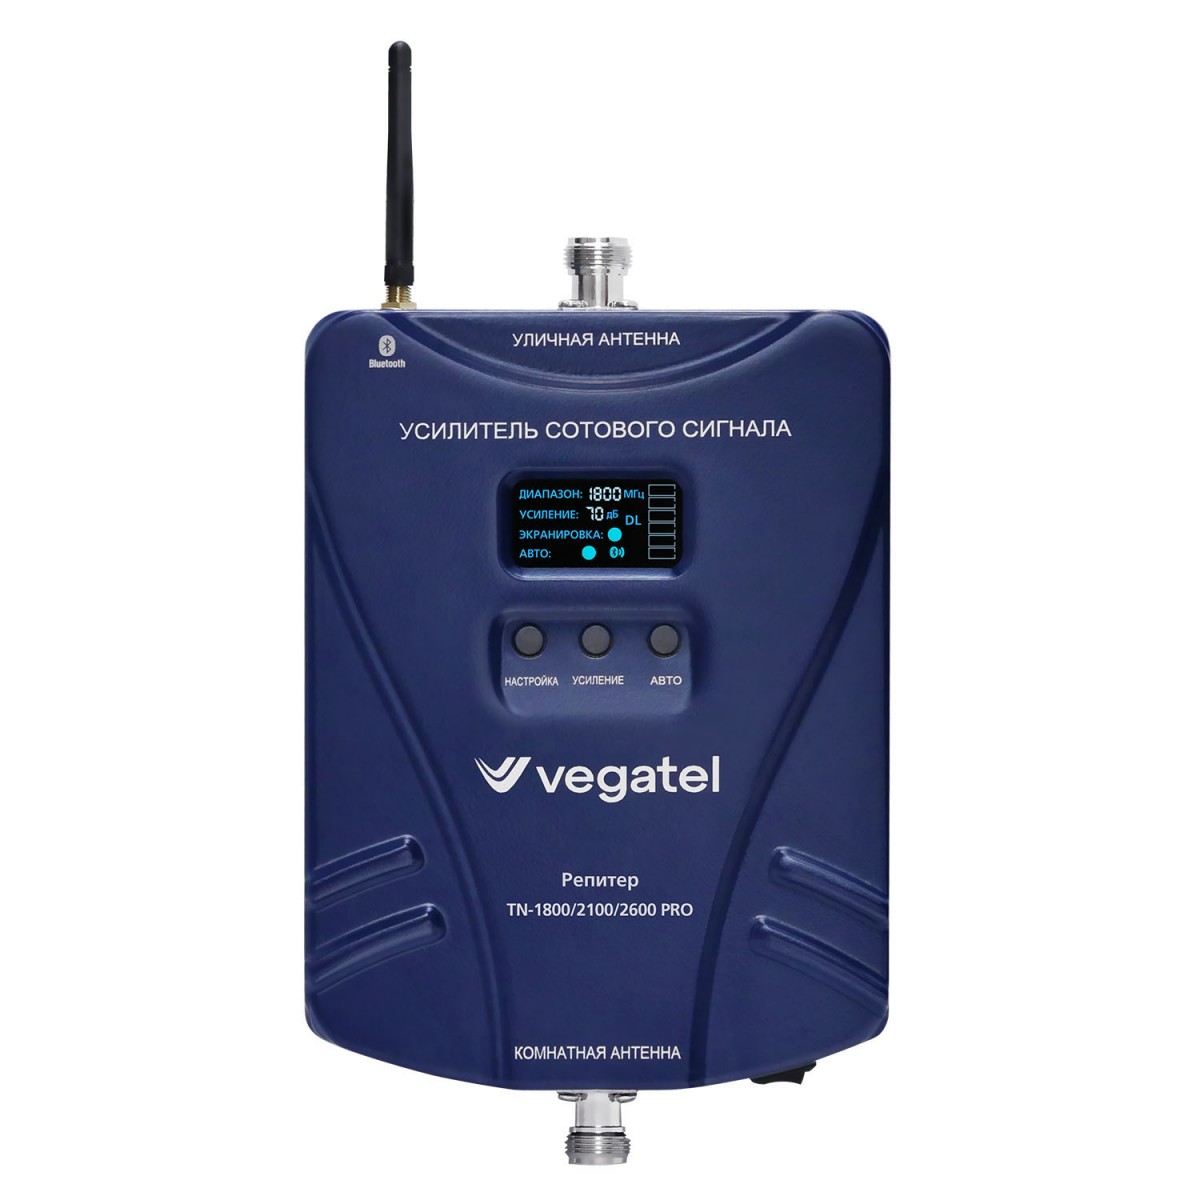 Детальное изображение товара "Комплект усиления сотовой связи Vegatel TN-1800/2100/2600 PRO" из каталога оборудования Антенна76